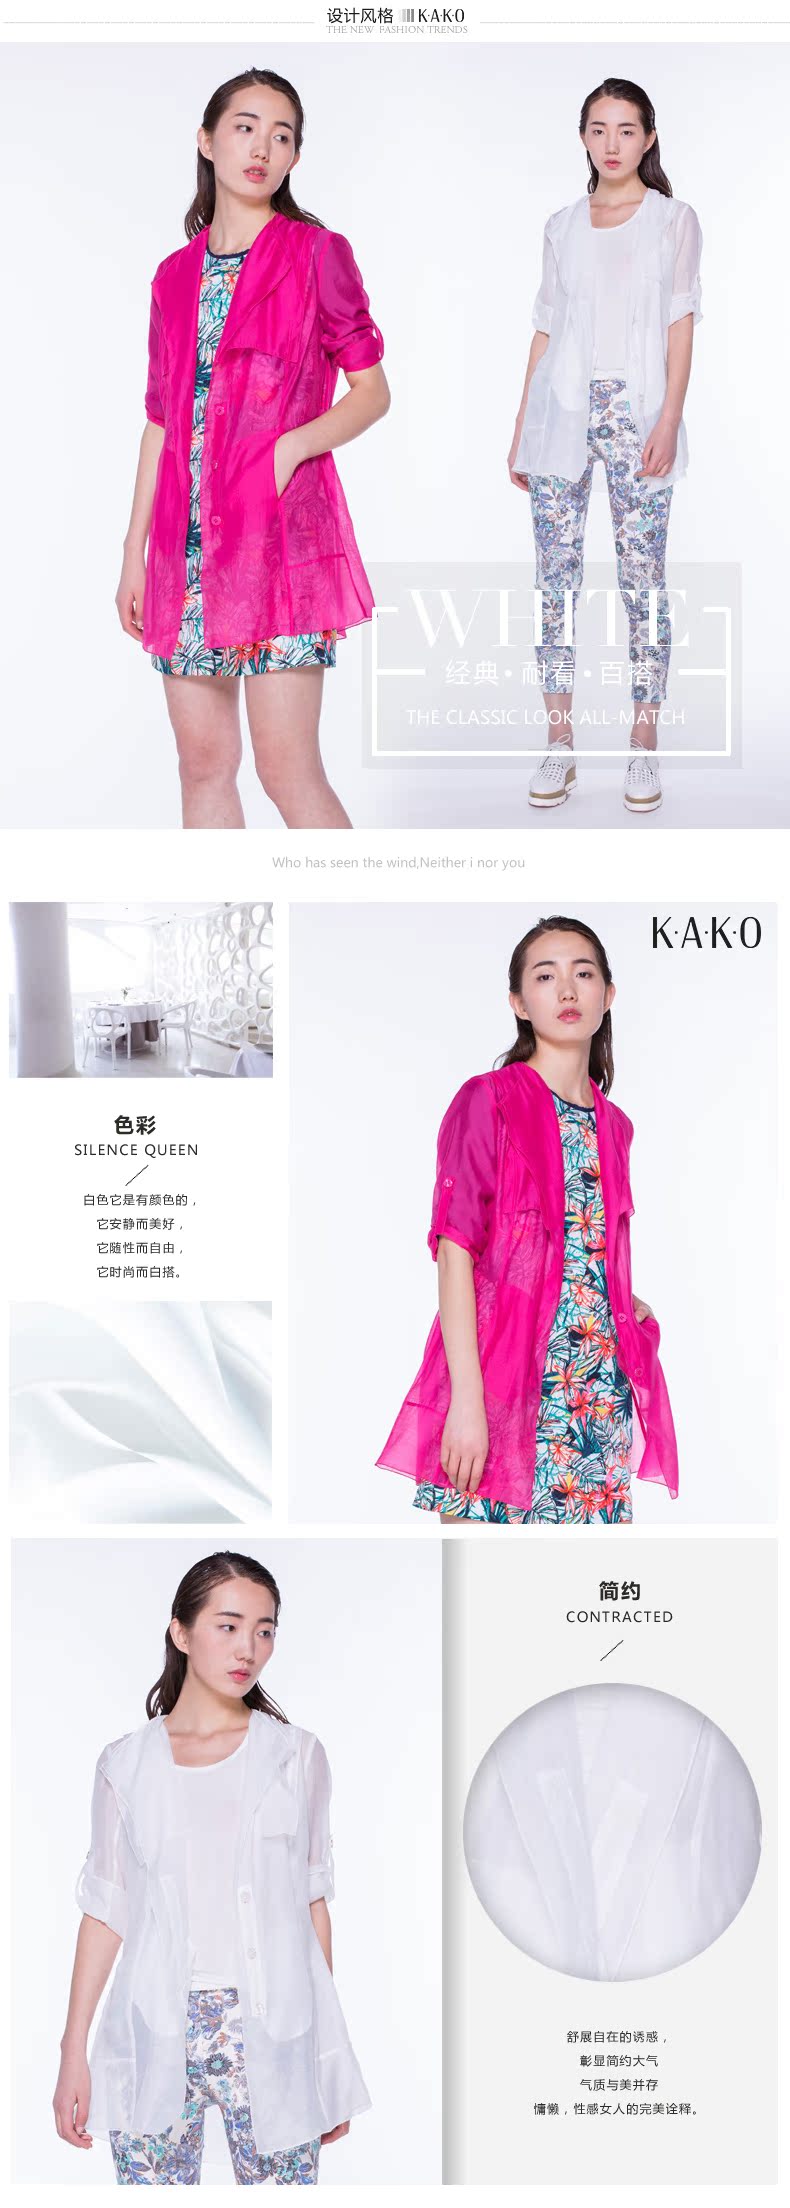 dior男風衣 KAKO 2020春夏新品 糖果色 時尚風衣 防曬風衣2507201 dior風衣